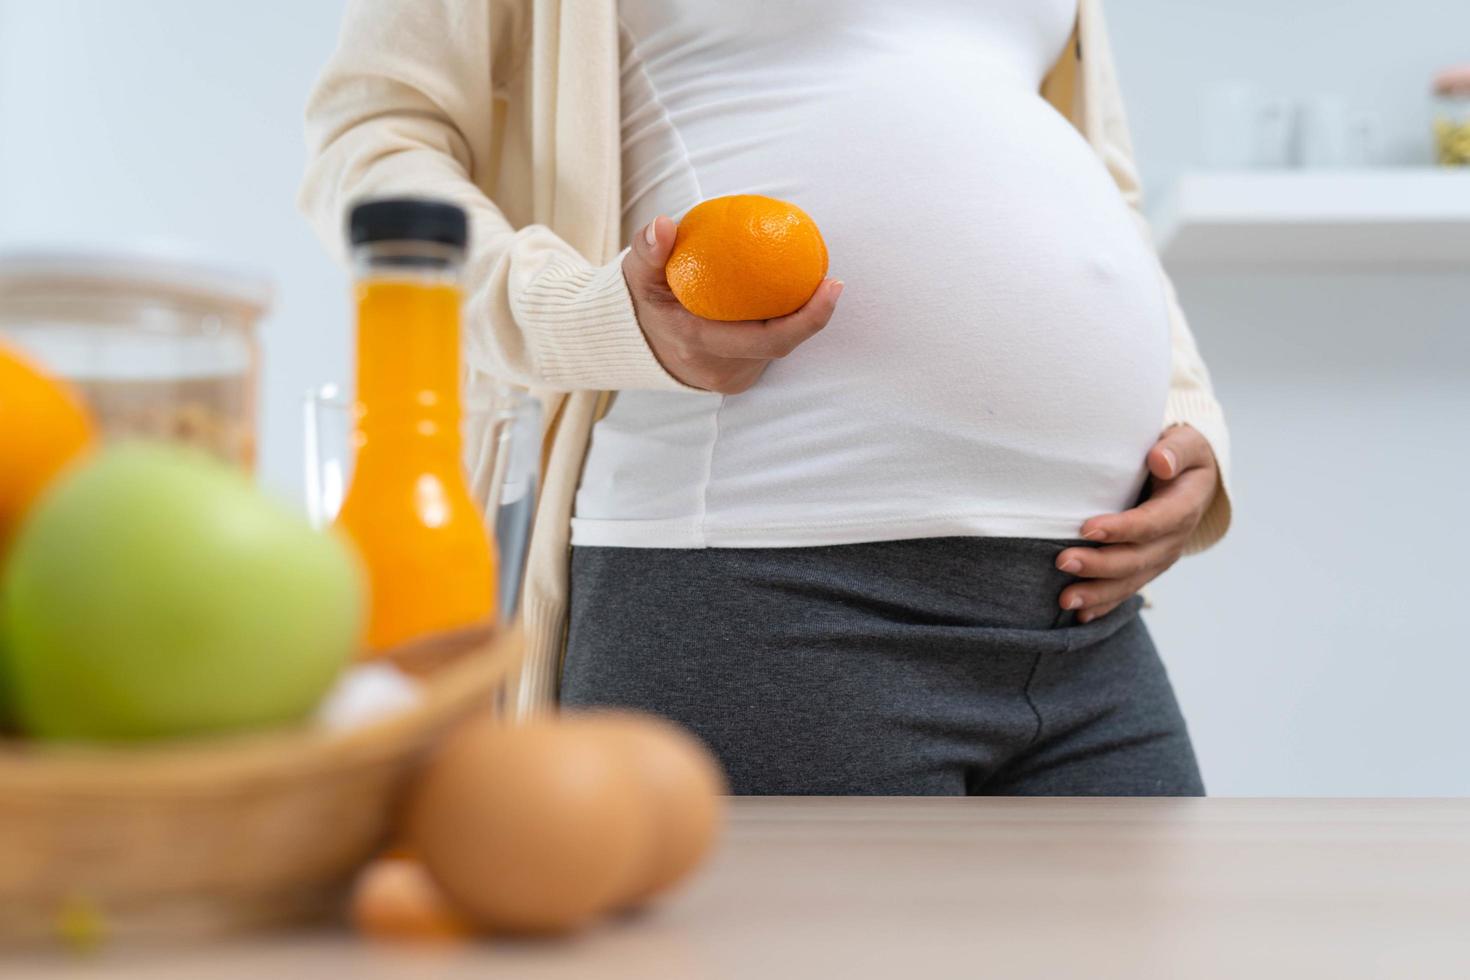 een 28 week zwanger vrouw houdt een oranje en kiest een voedzaam eetpatroon voor de gezond ontwikkeling en groei van haar ongeboren kind. foto